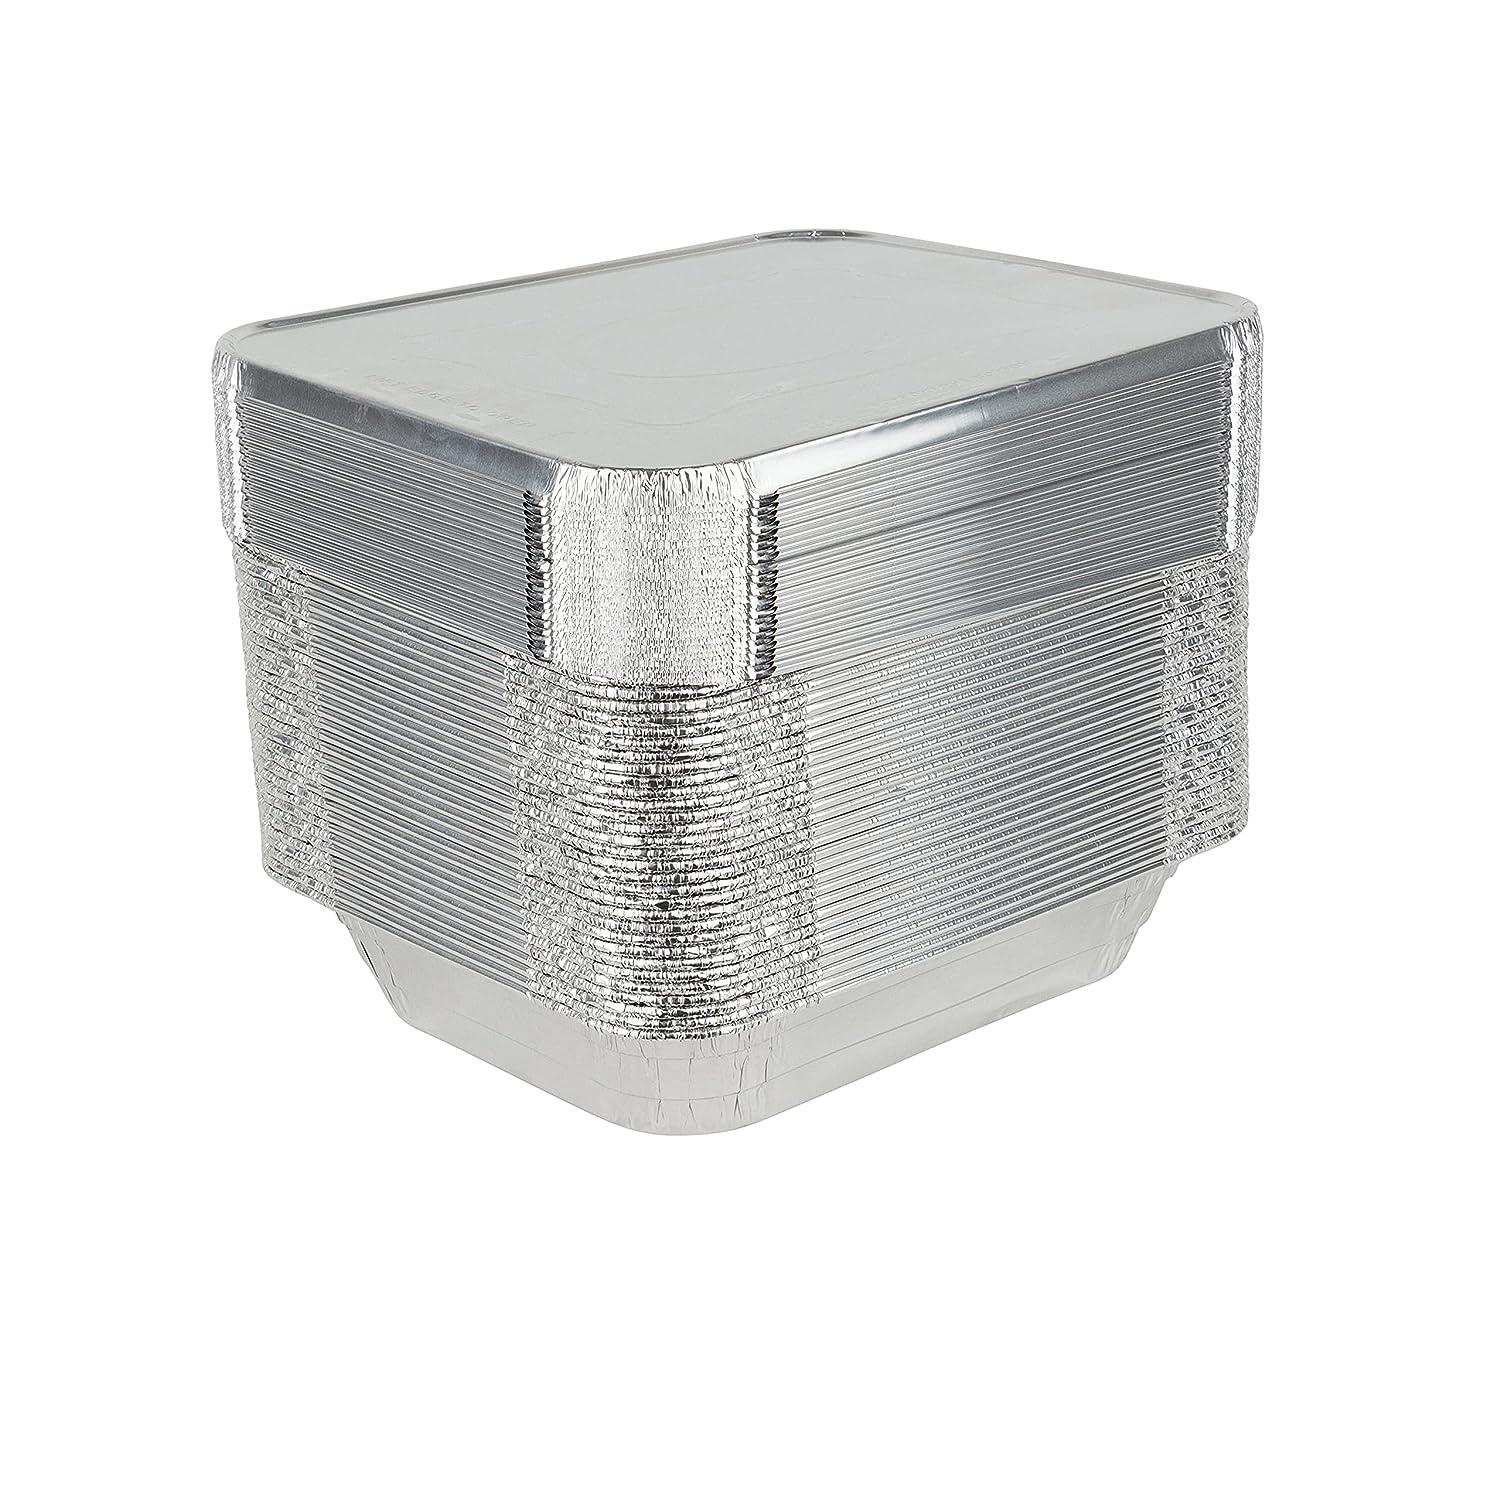 Stock Your Home 9x13 Pans with Lids (10 Pack) - Aluminum Foil Pans